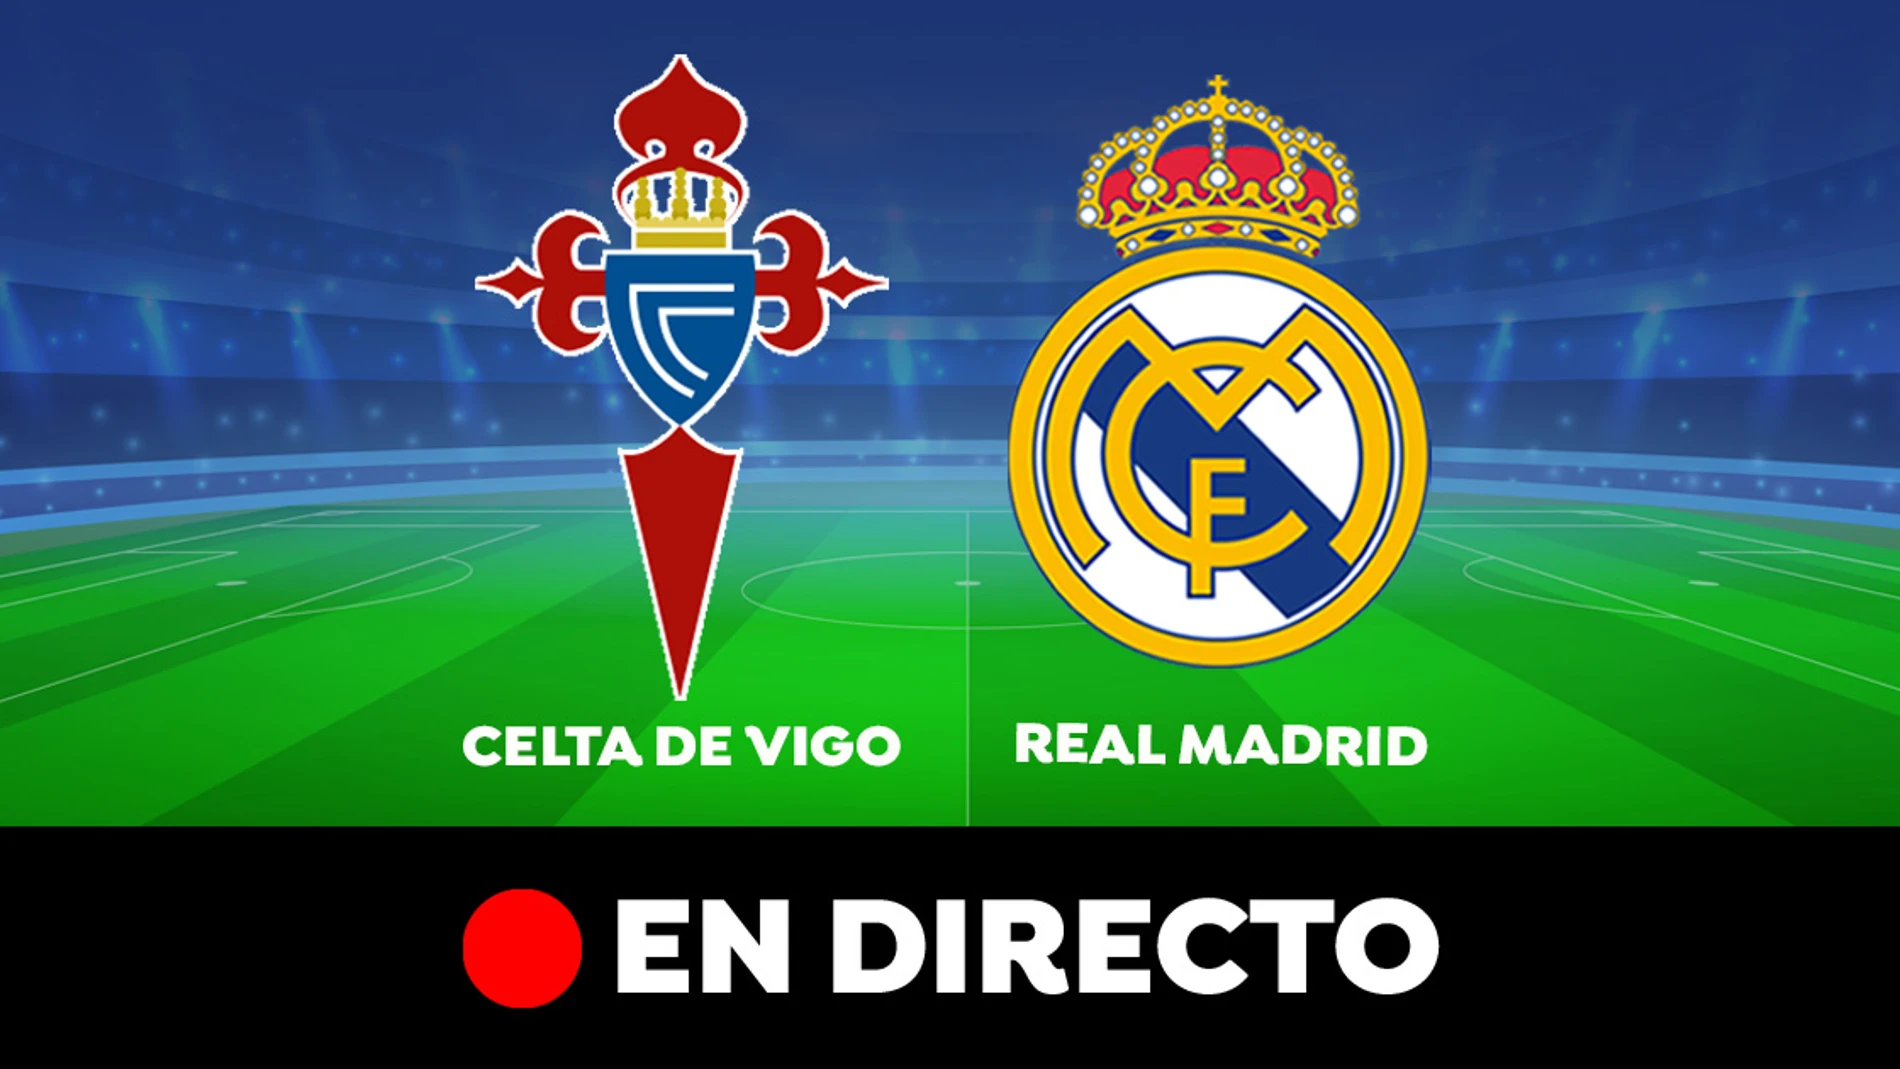 Celta de Vigo - Real Madrid: partido de LaLiga, en directo